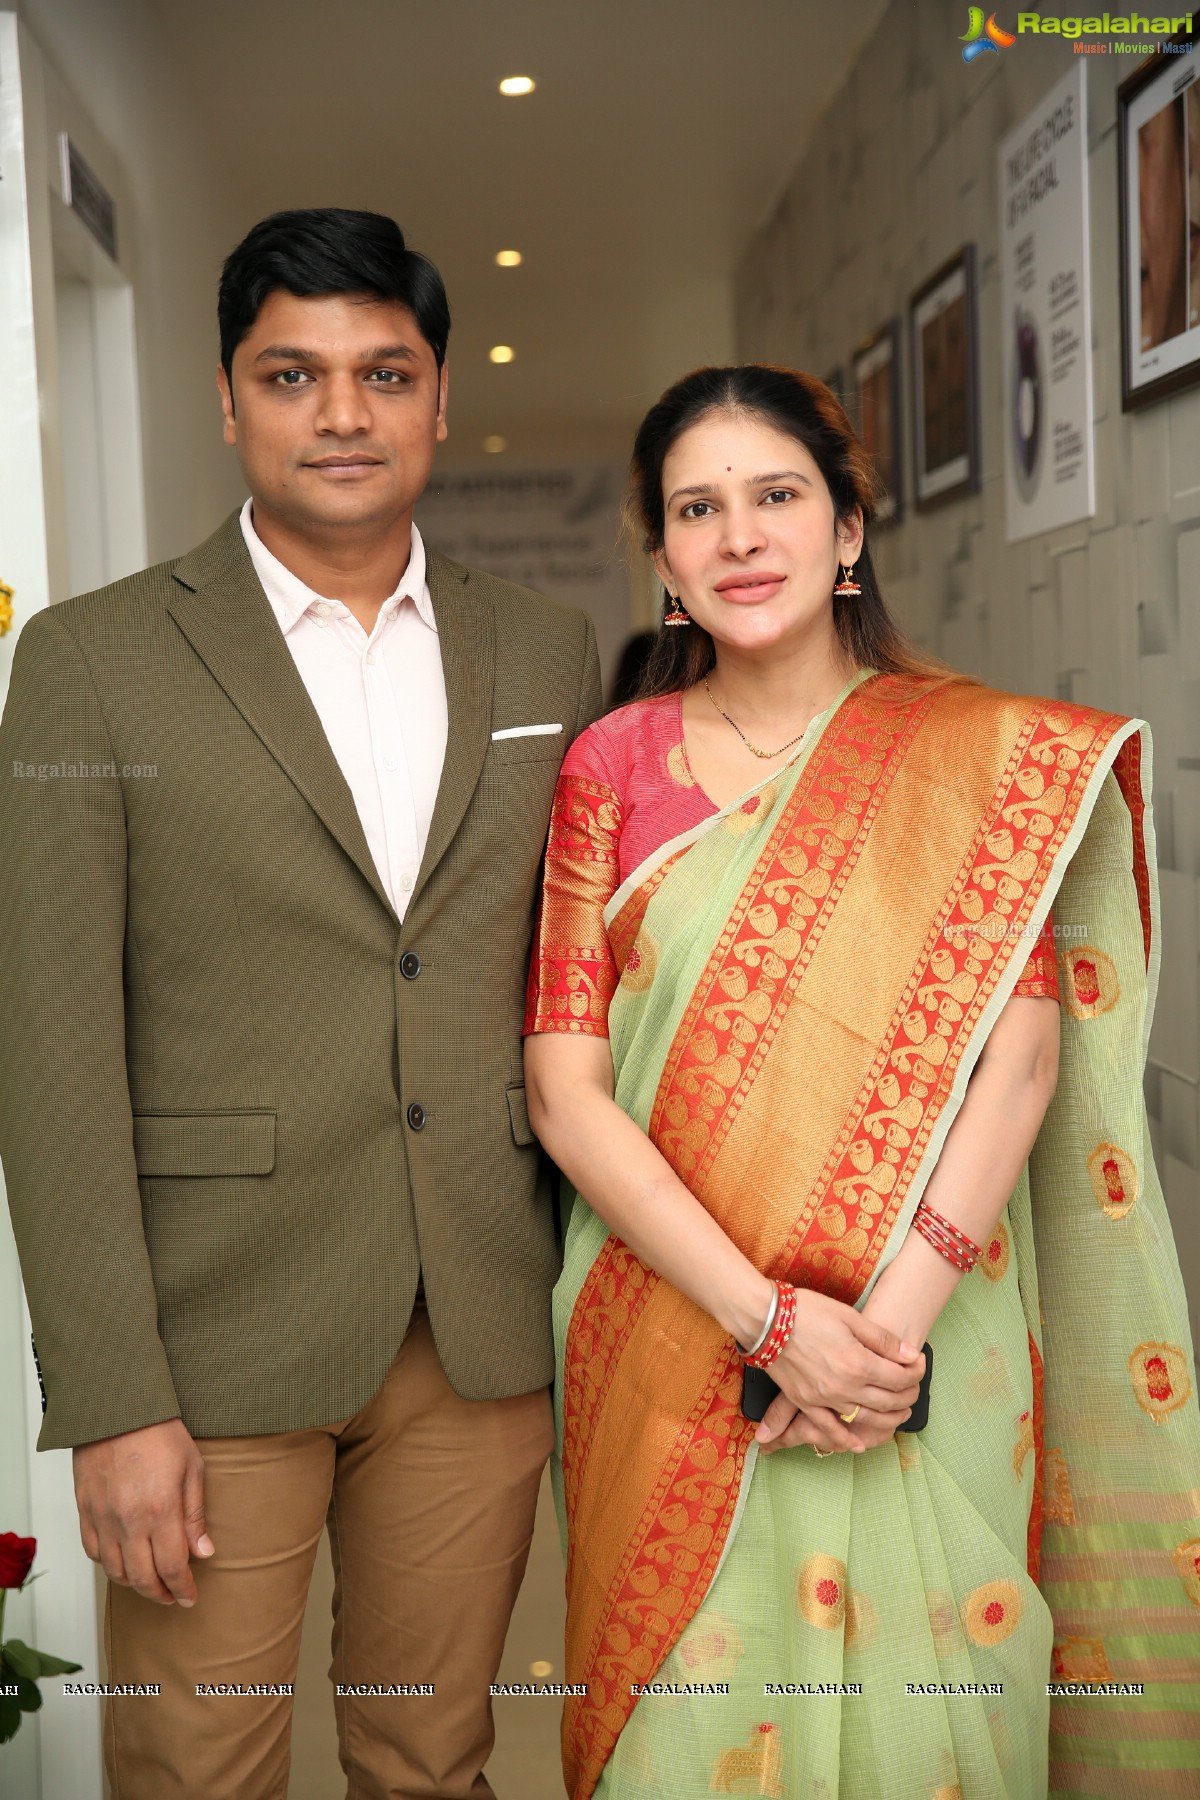 Yamini Bhaskar Launches Studio Aesthetics - Skin Laser & Anti-Aging Clinic at Gachibowli, Hyderabad